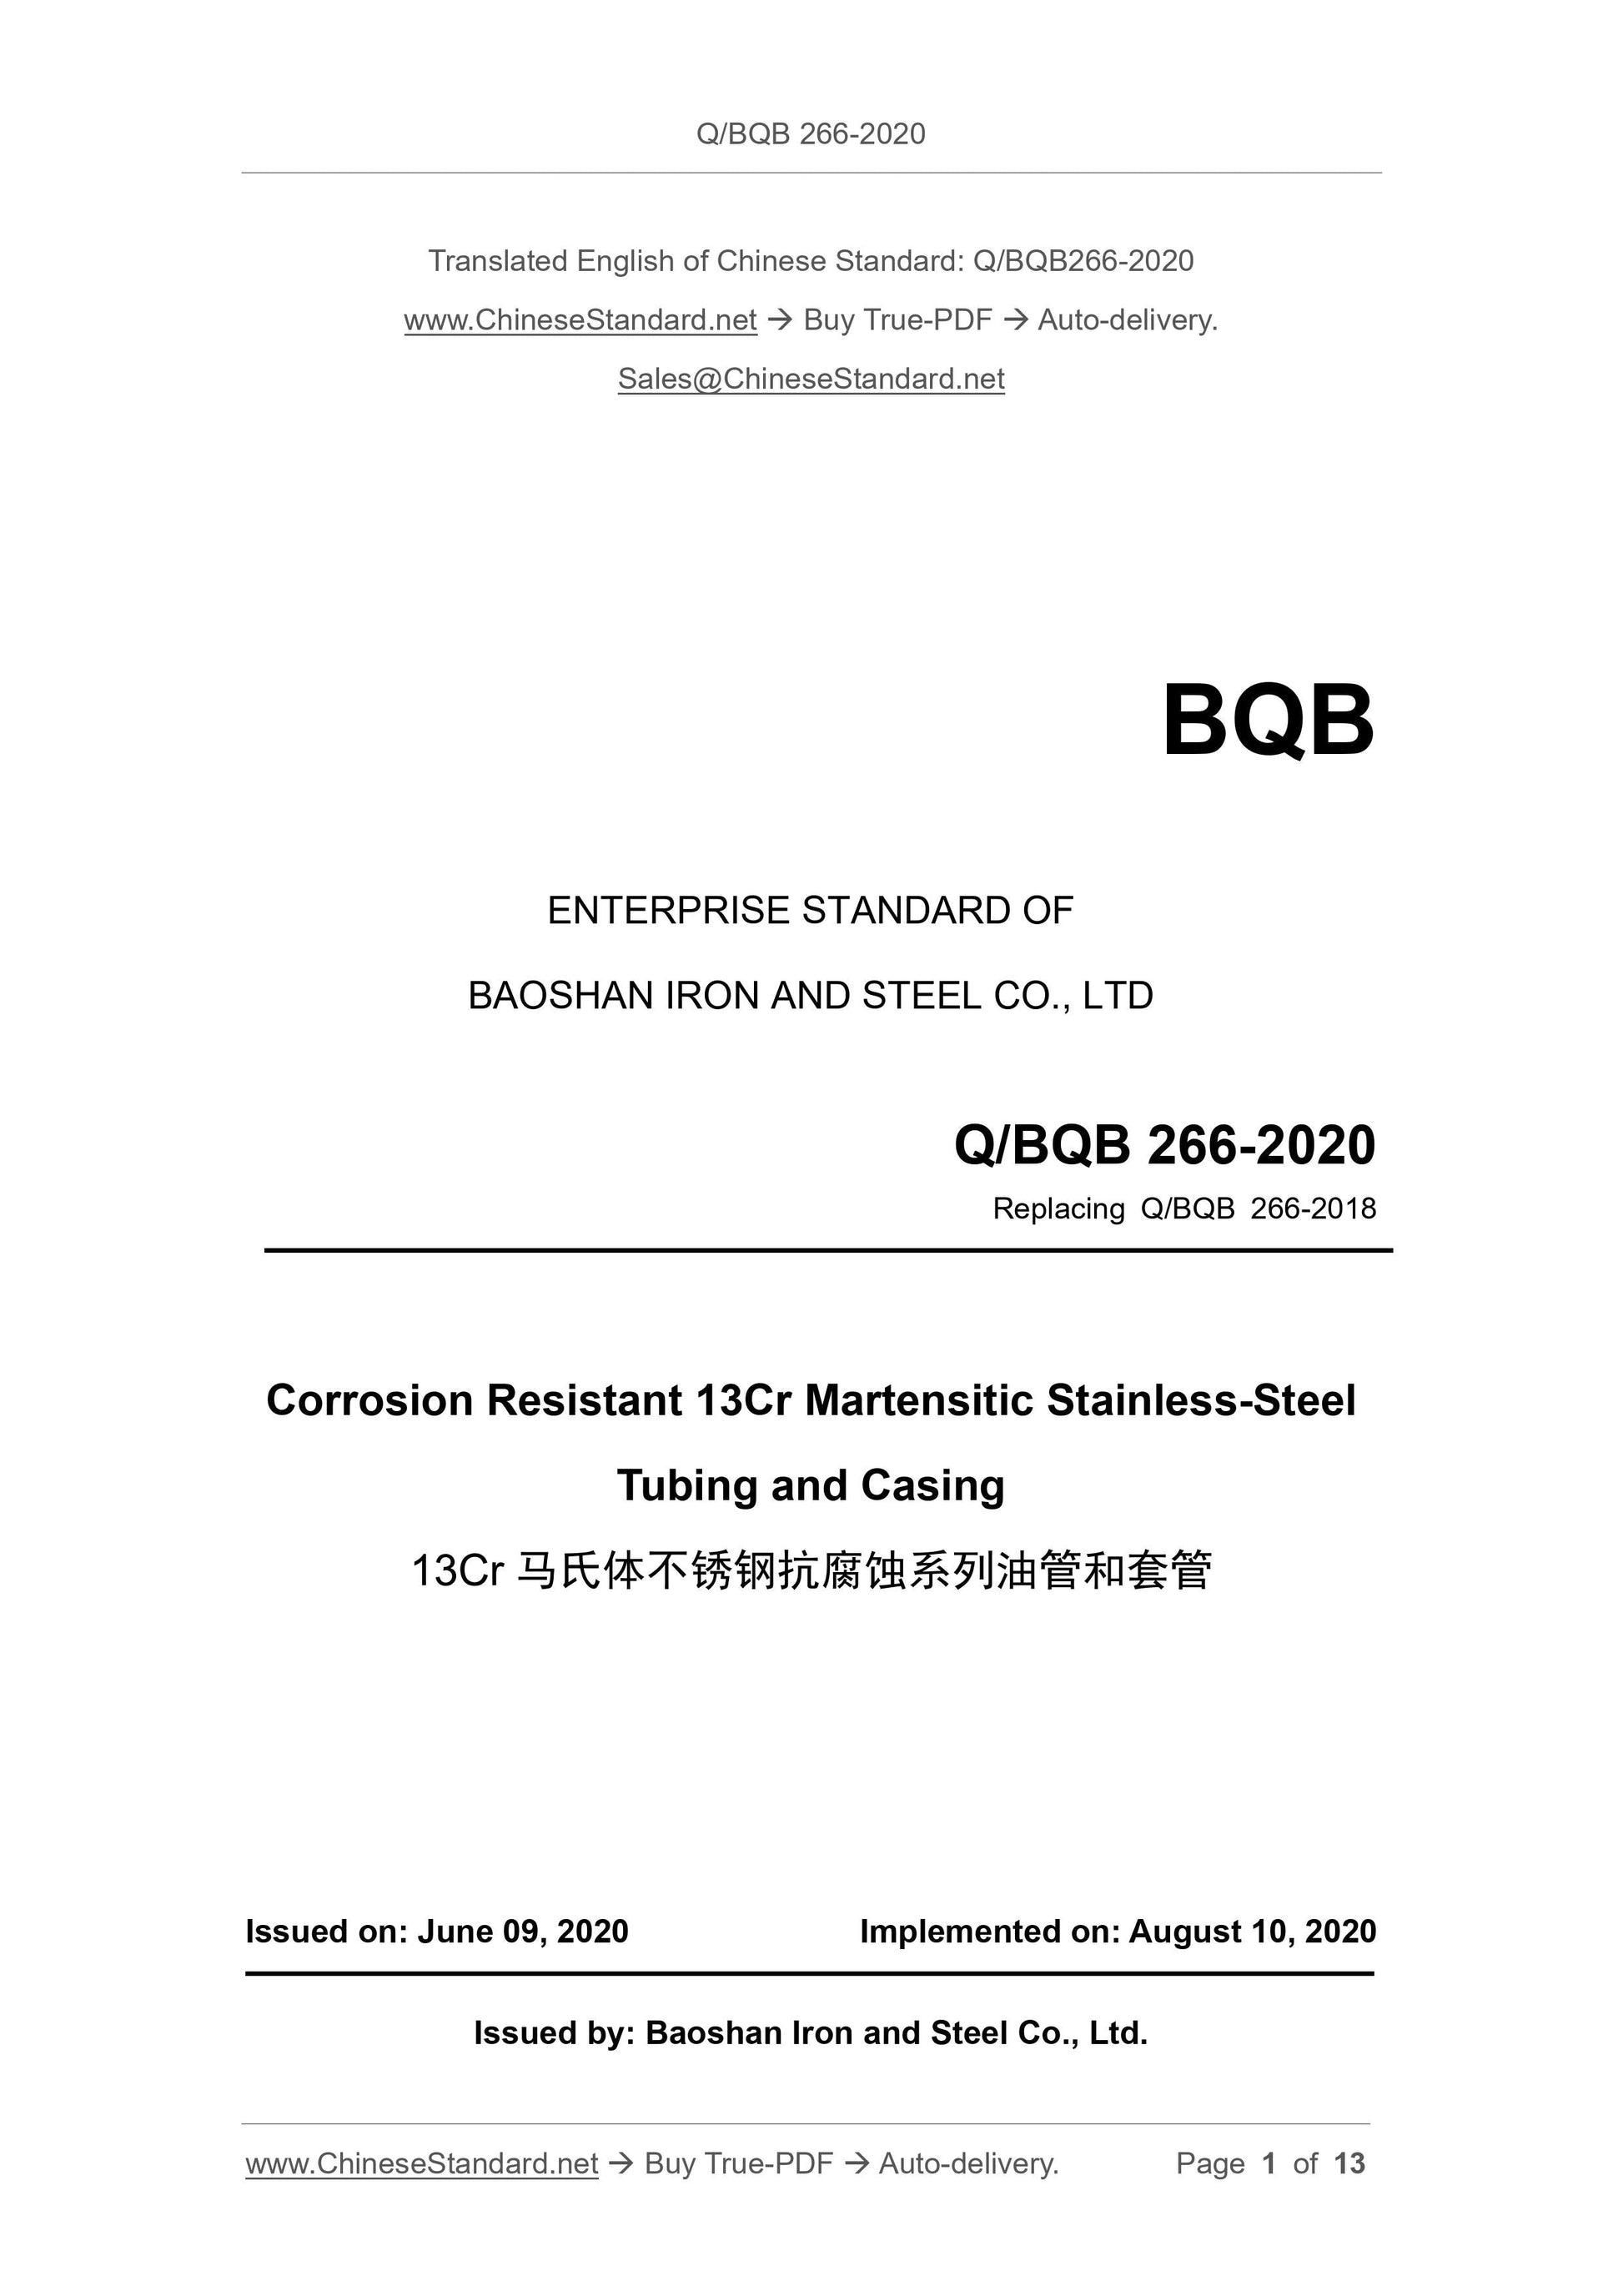 Q/BQB 266-2020 Page 1